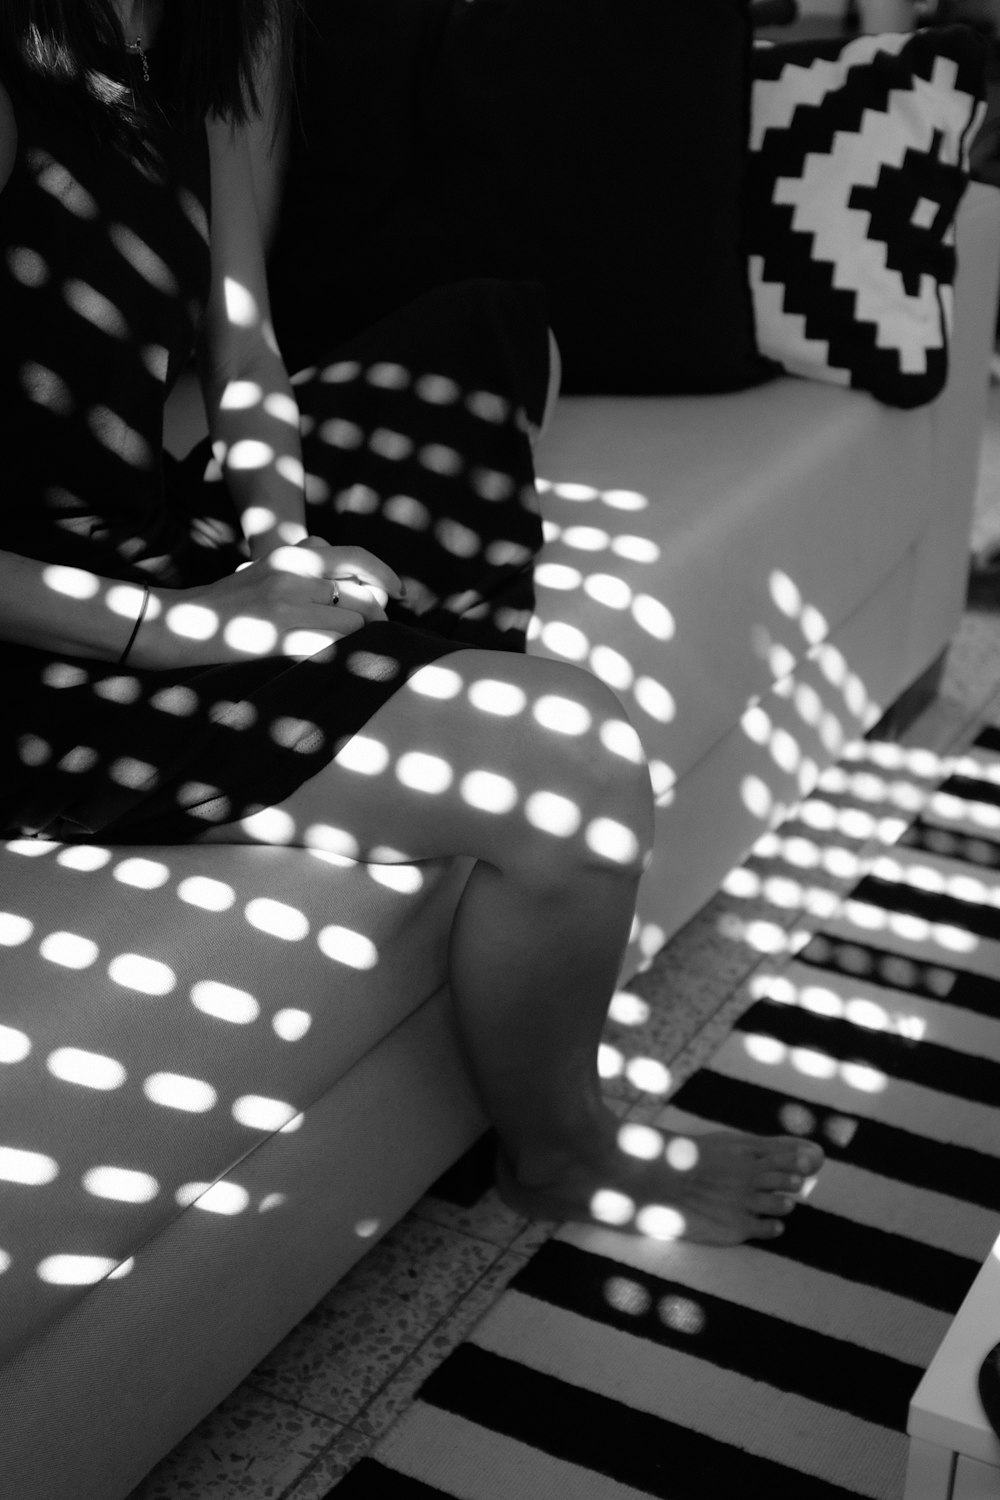 Photographie en niveaux de gris d’une personne pieds nus assise sur un canapé